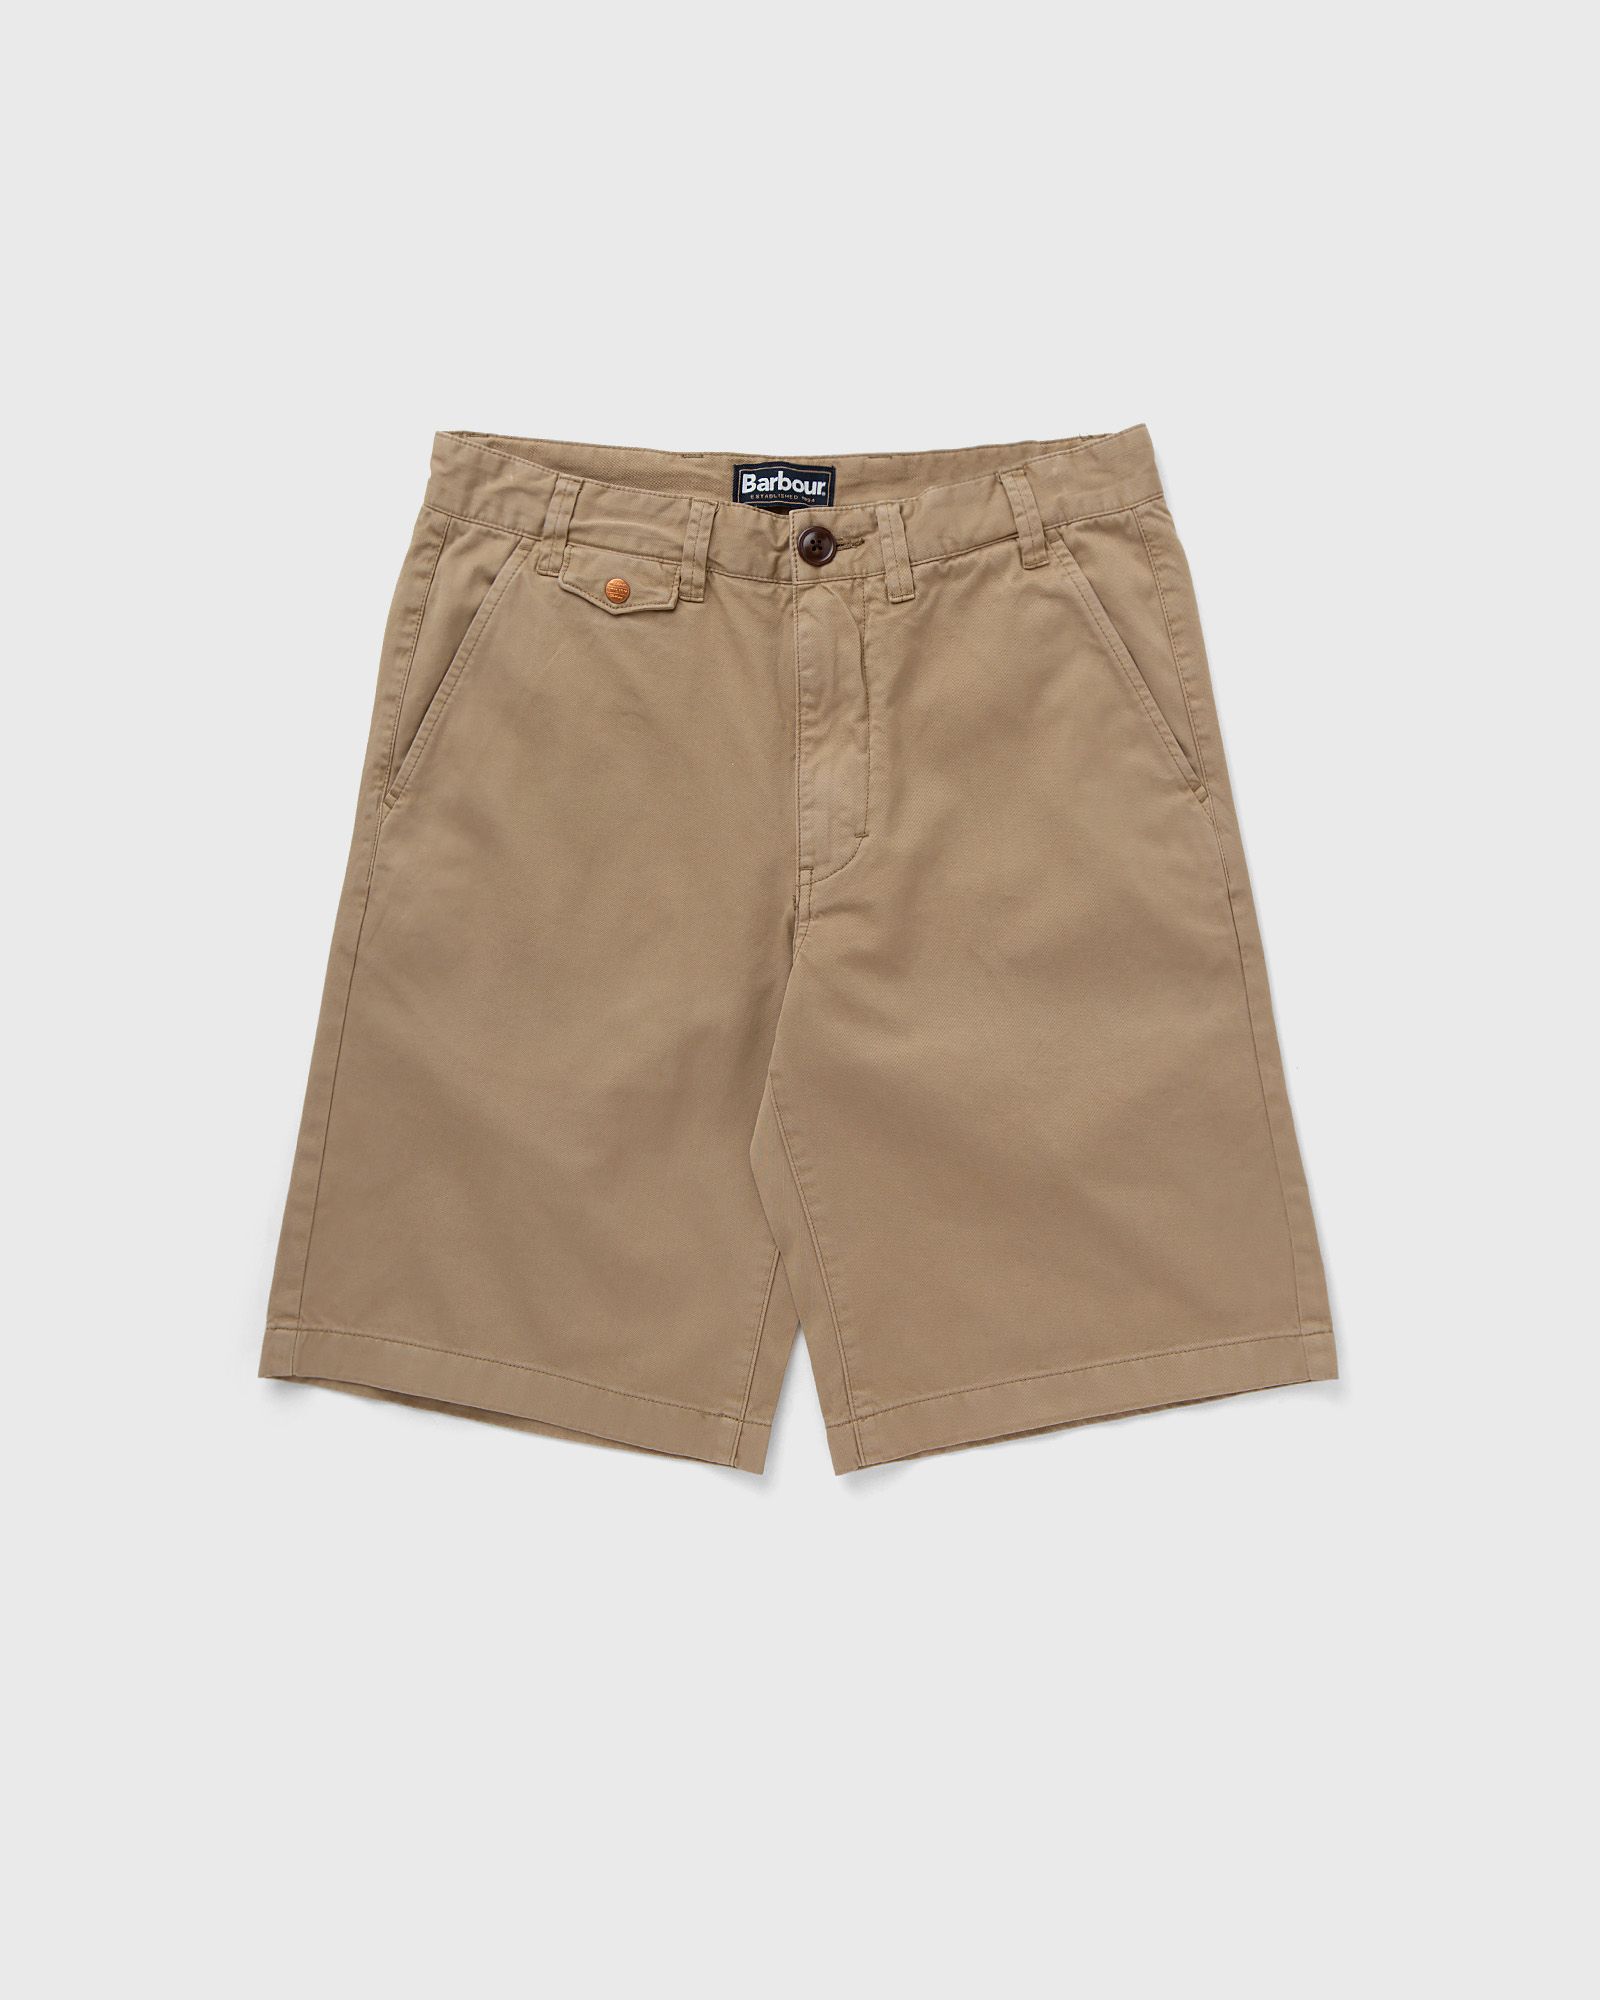 Barbour - neust twill shorts men casual shorts beige in größe:xxl